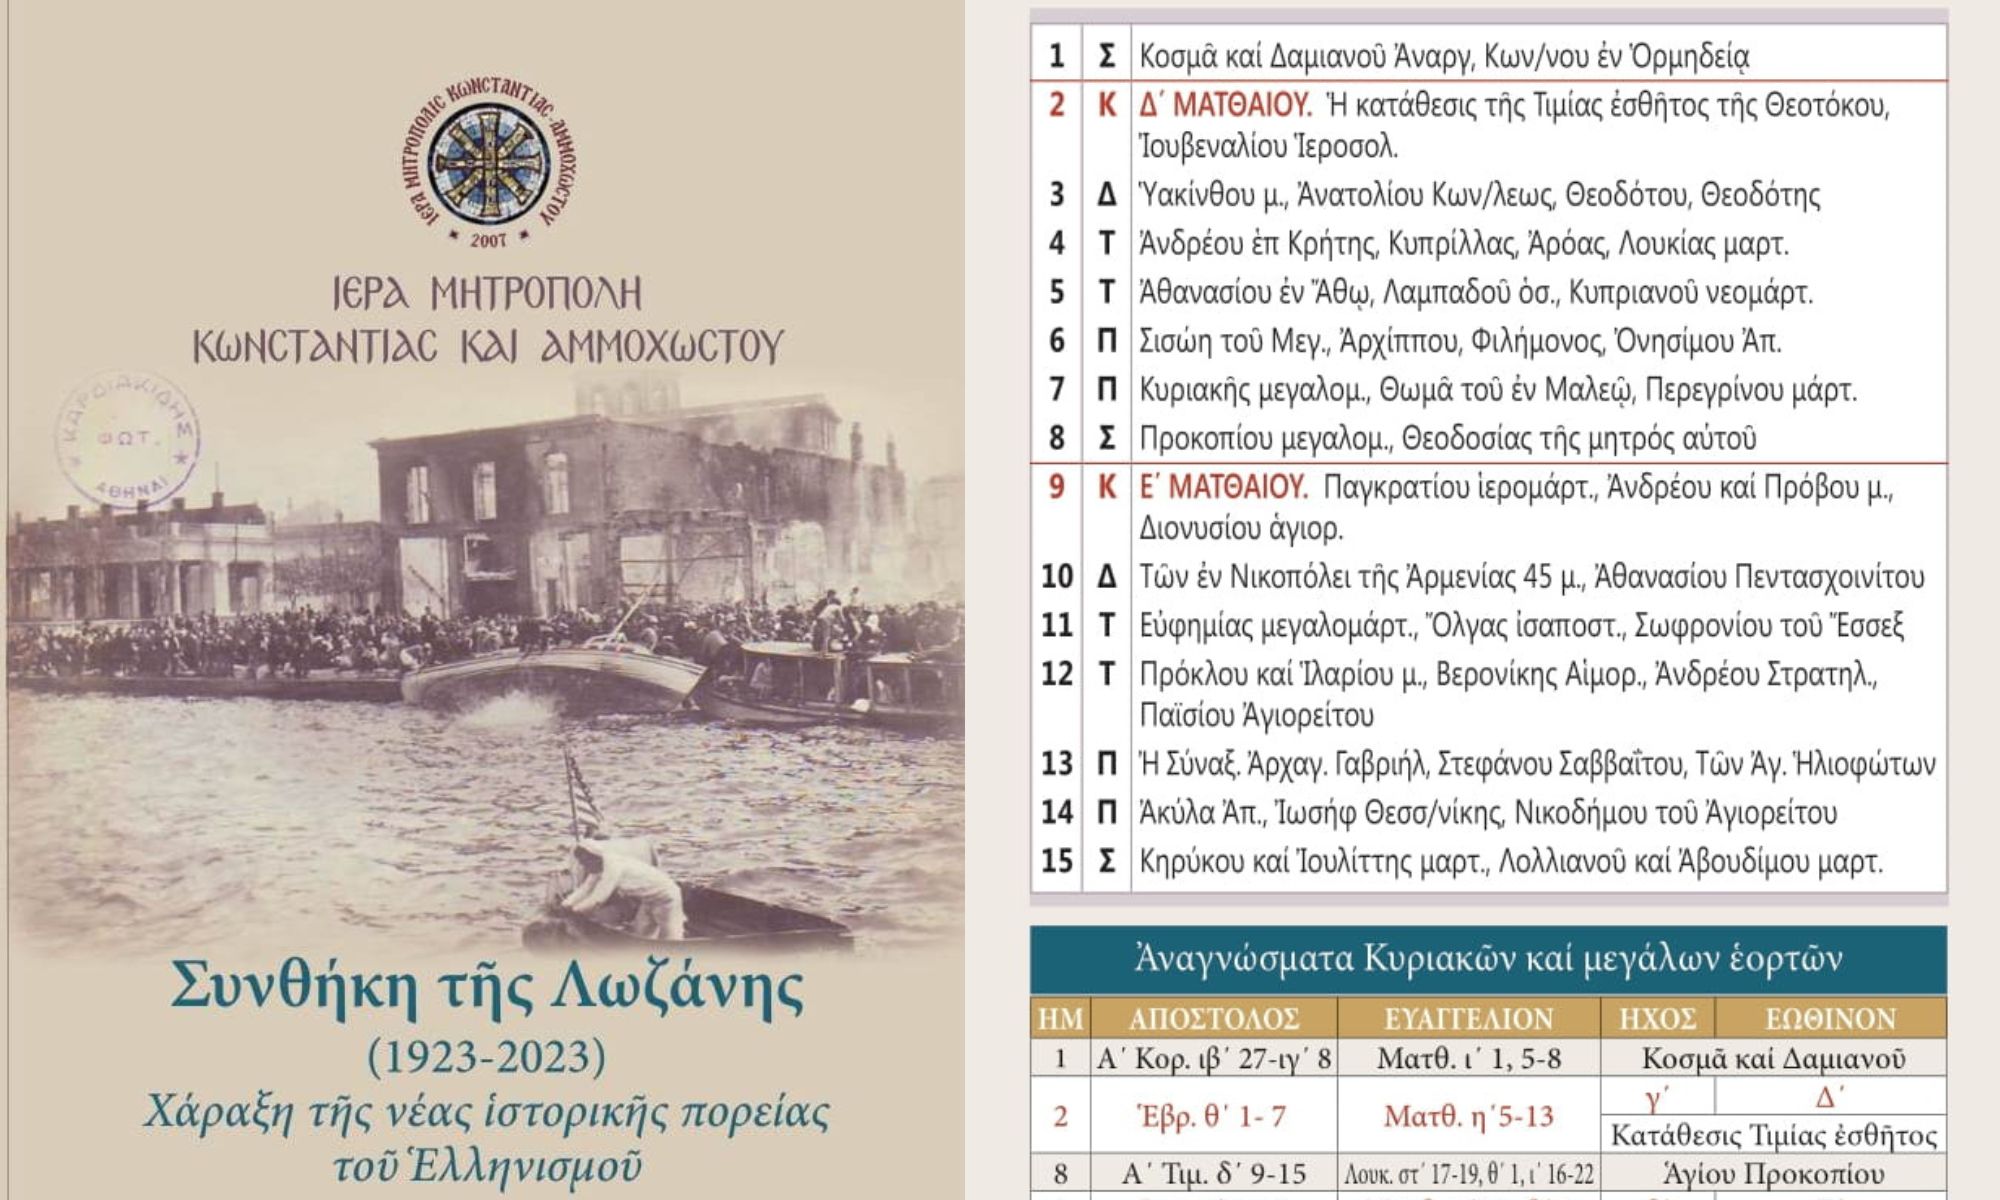 Ιερά Μητρόπολη Κωνσταντίας και Αμμοχώστου: Κυκλοφόρησε το ημερολόγιο τσέπης 2023